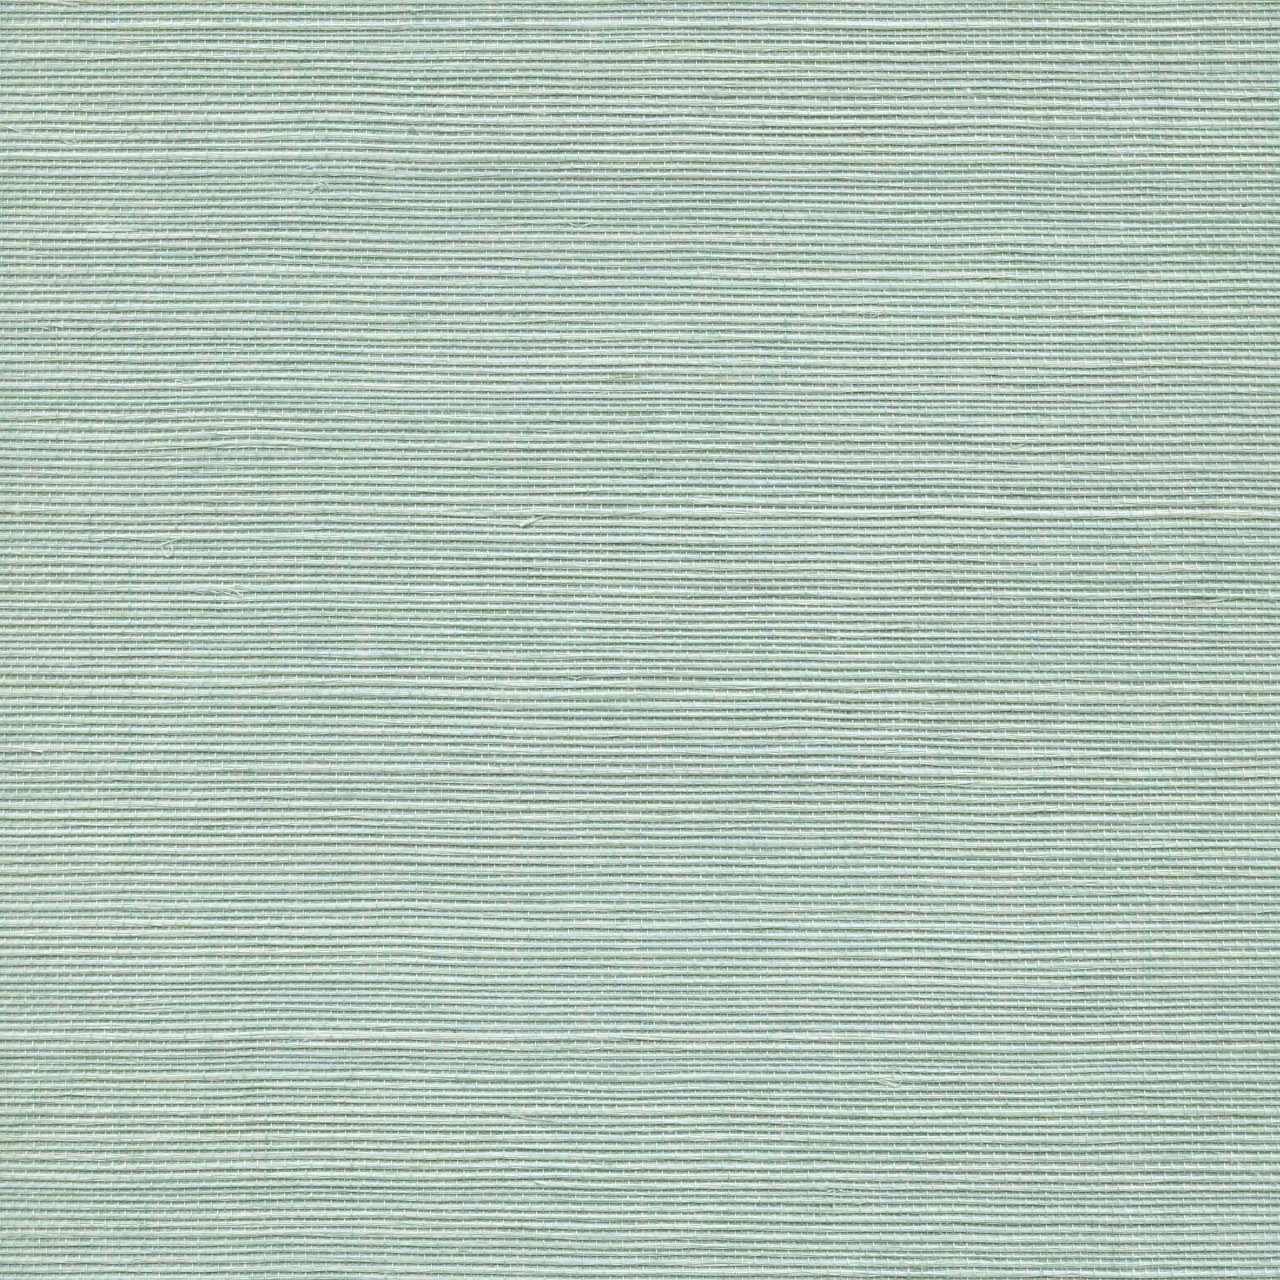 Blue Seagrass Wallpaper Grasscloth